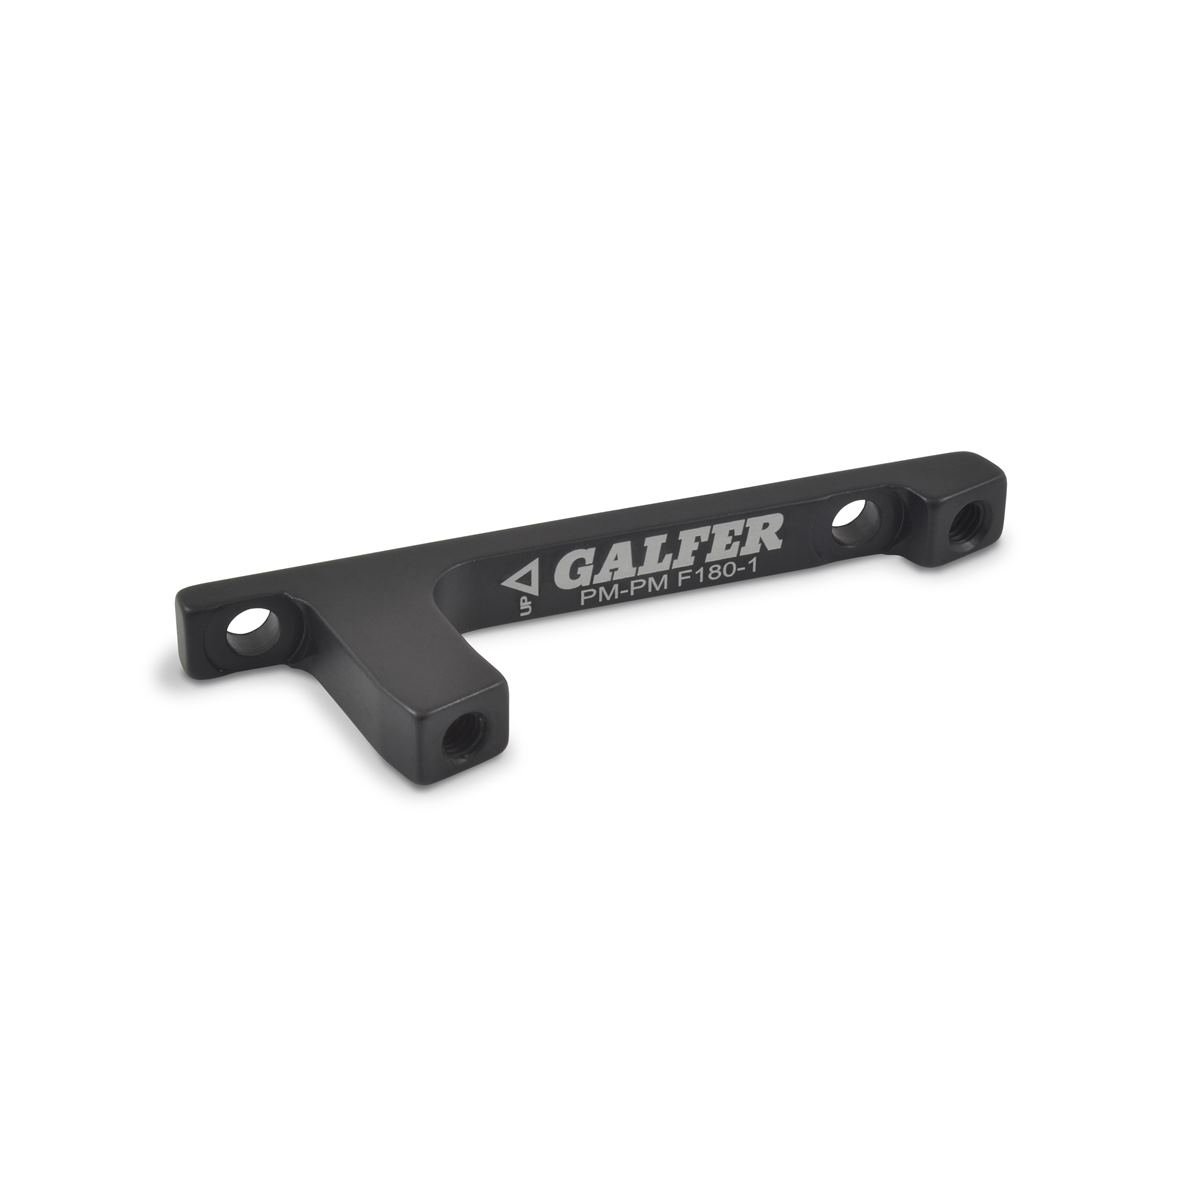 Galfer Brake Caliper Adapter  PM-PM +20 mm